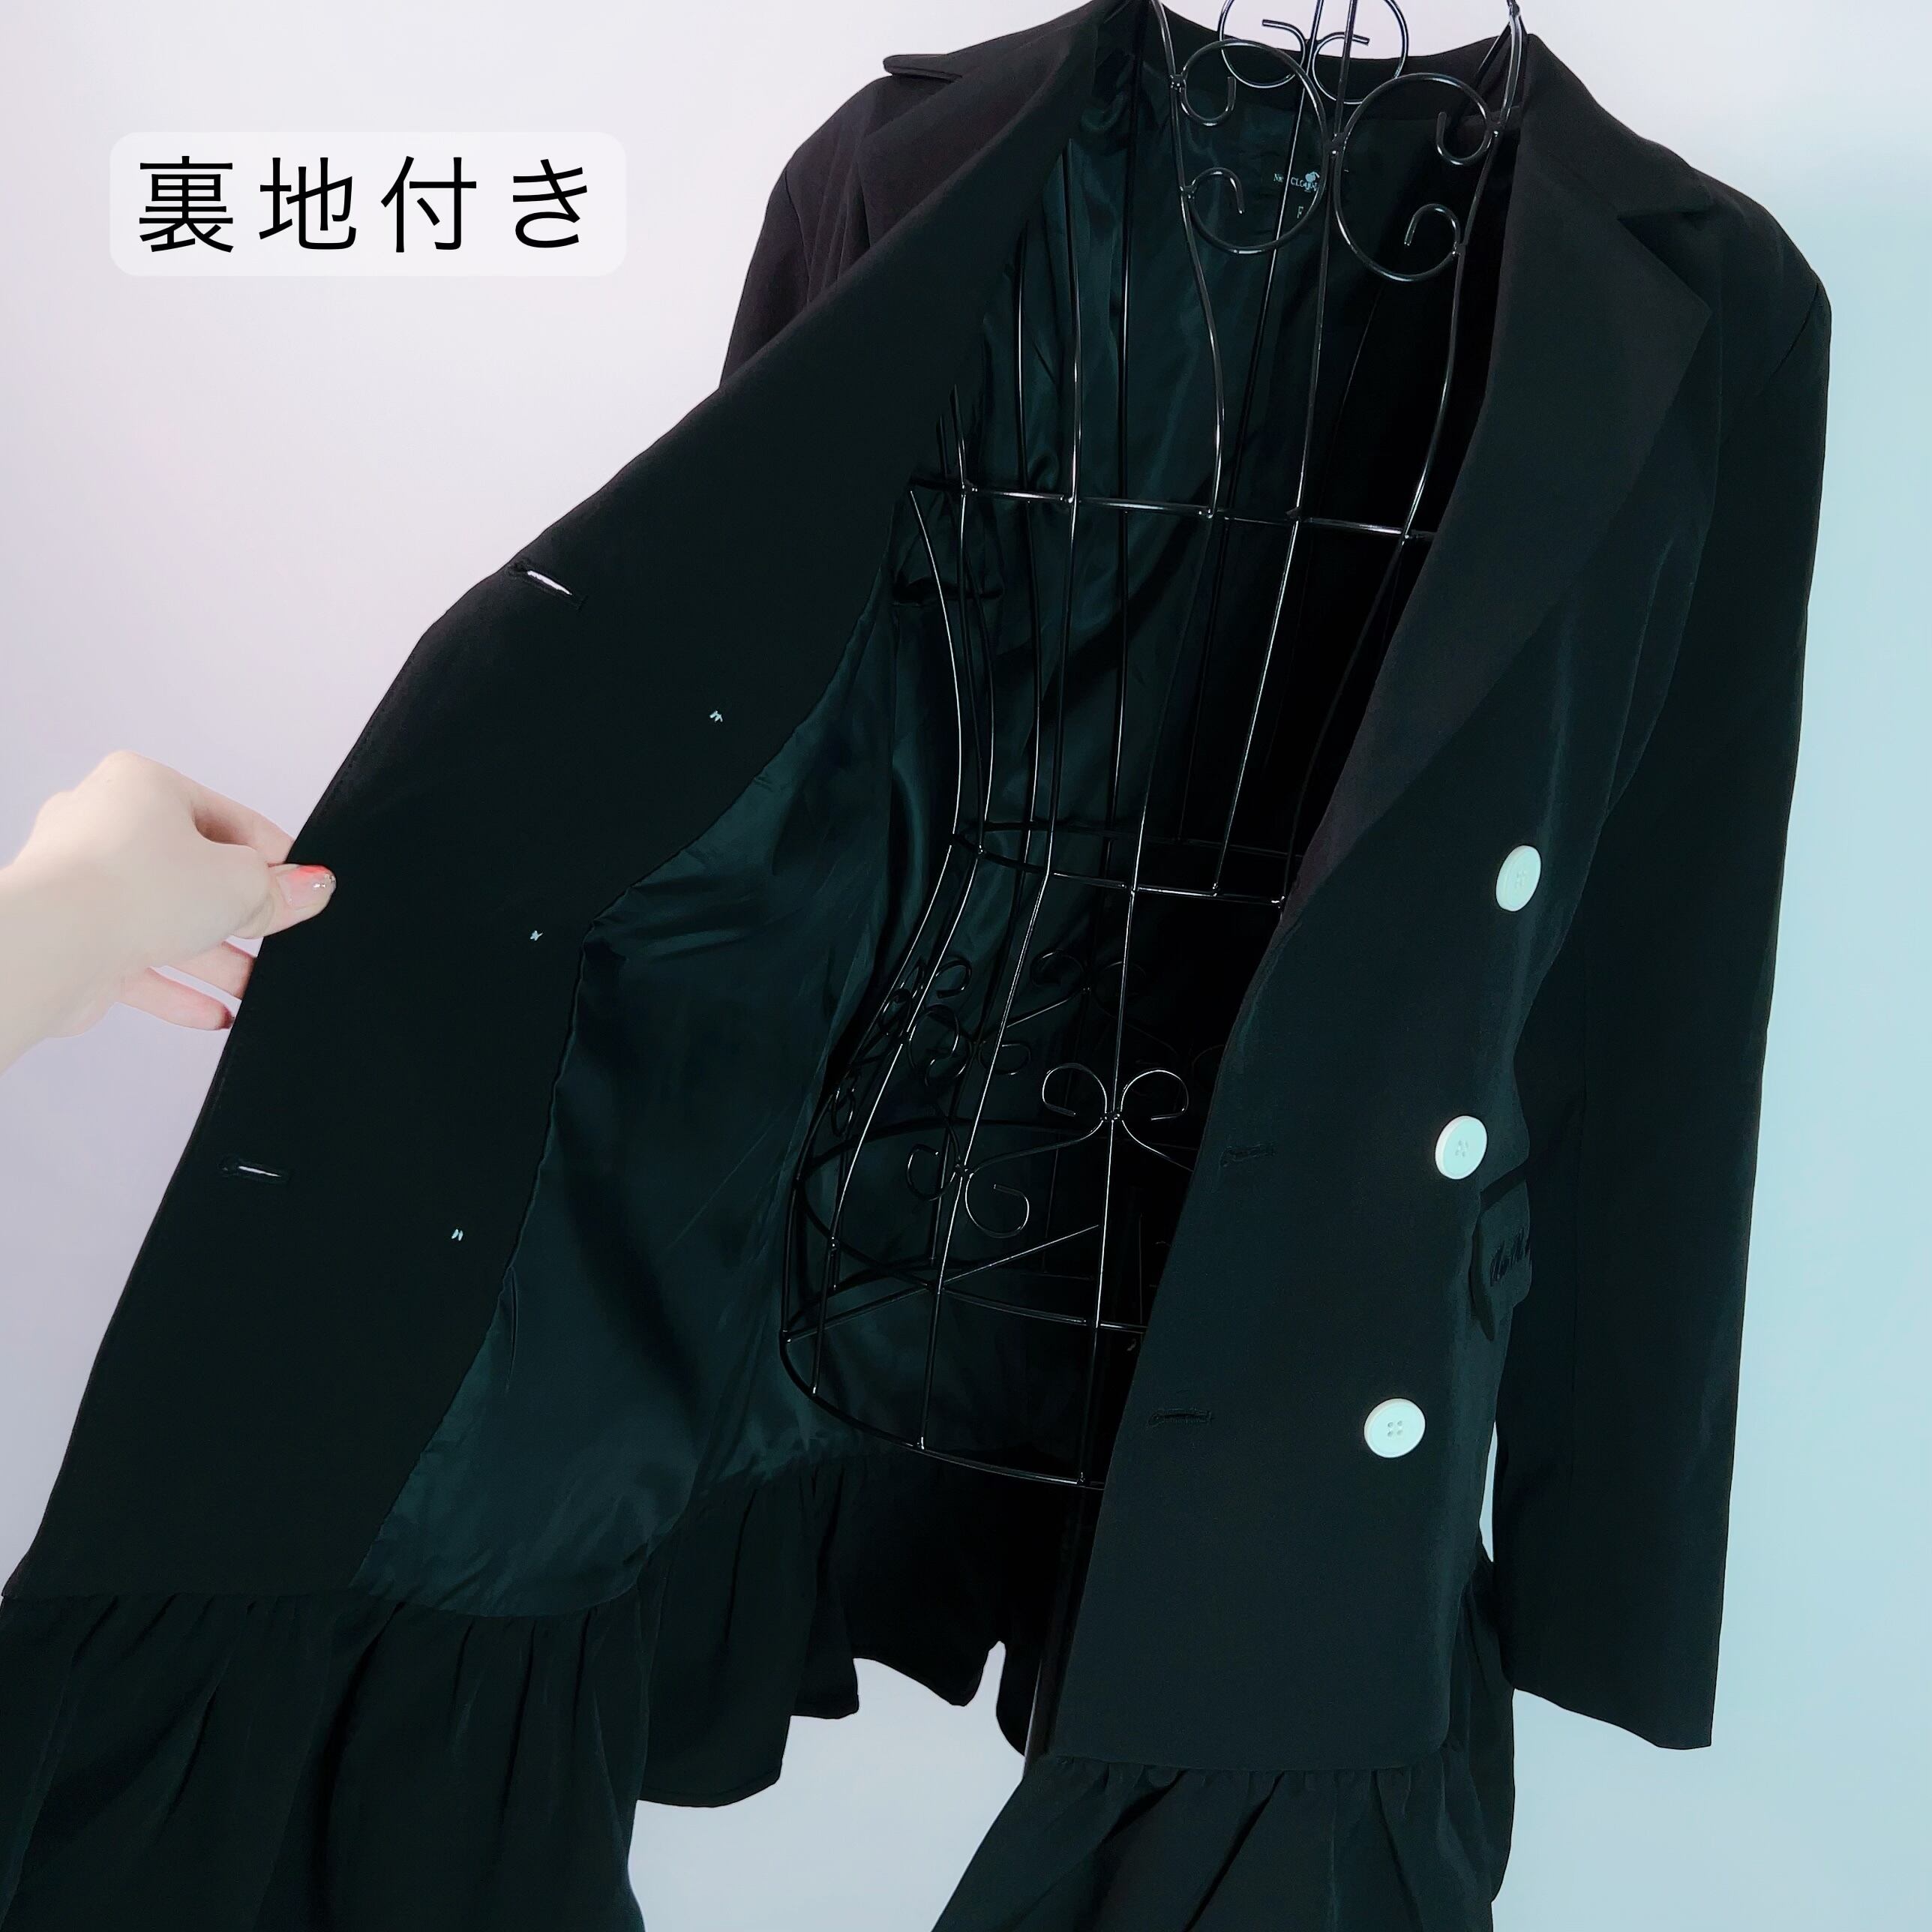 高品質 取り外し可能ベルト付き 裾フリルジャケットコート | NIER CLOTHING powered by BASE